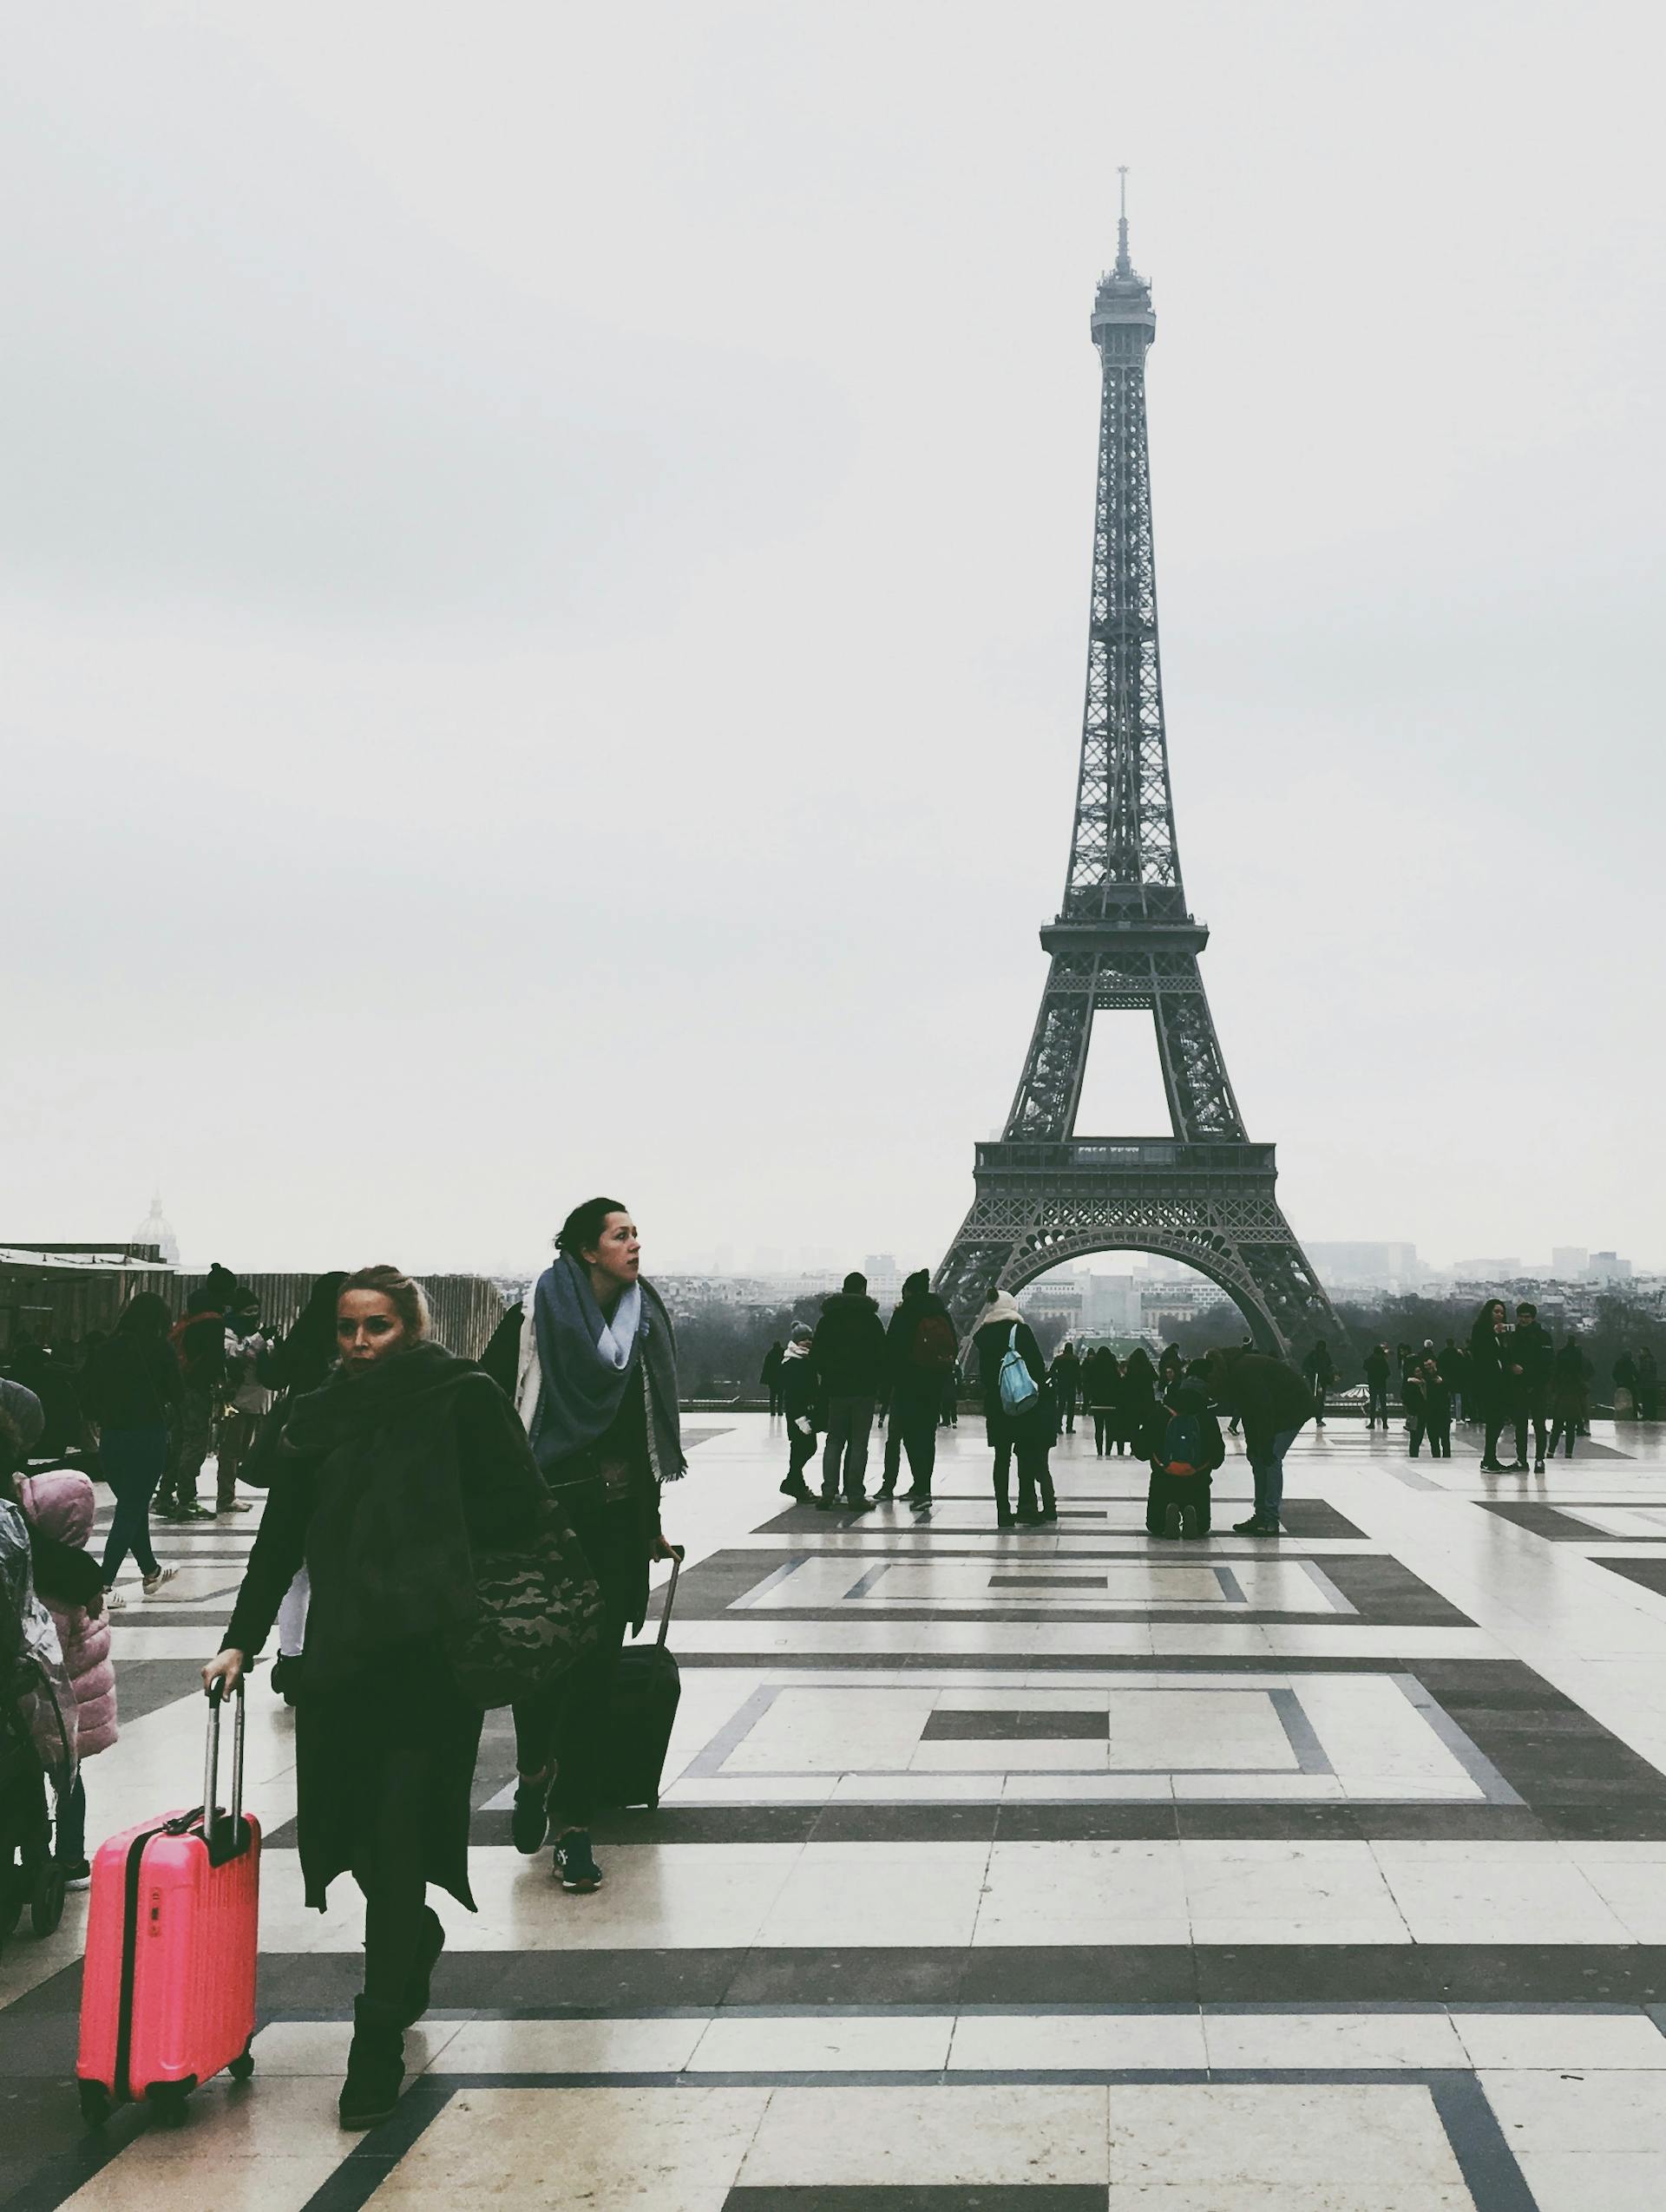 Menschen rund um den Eiffelturm | Quelle: Pexels